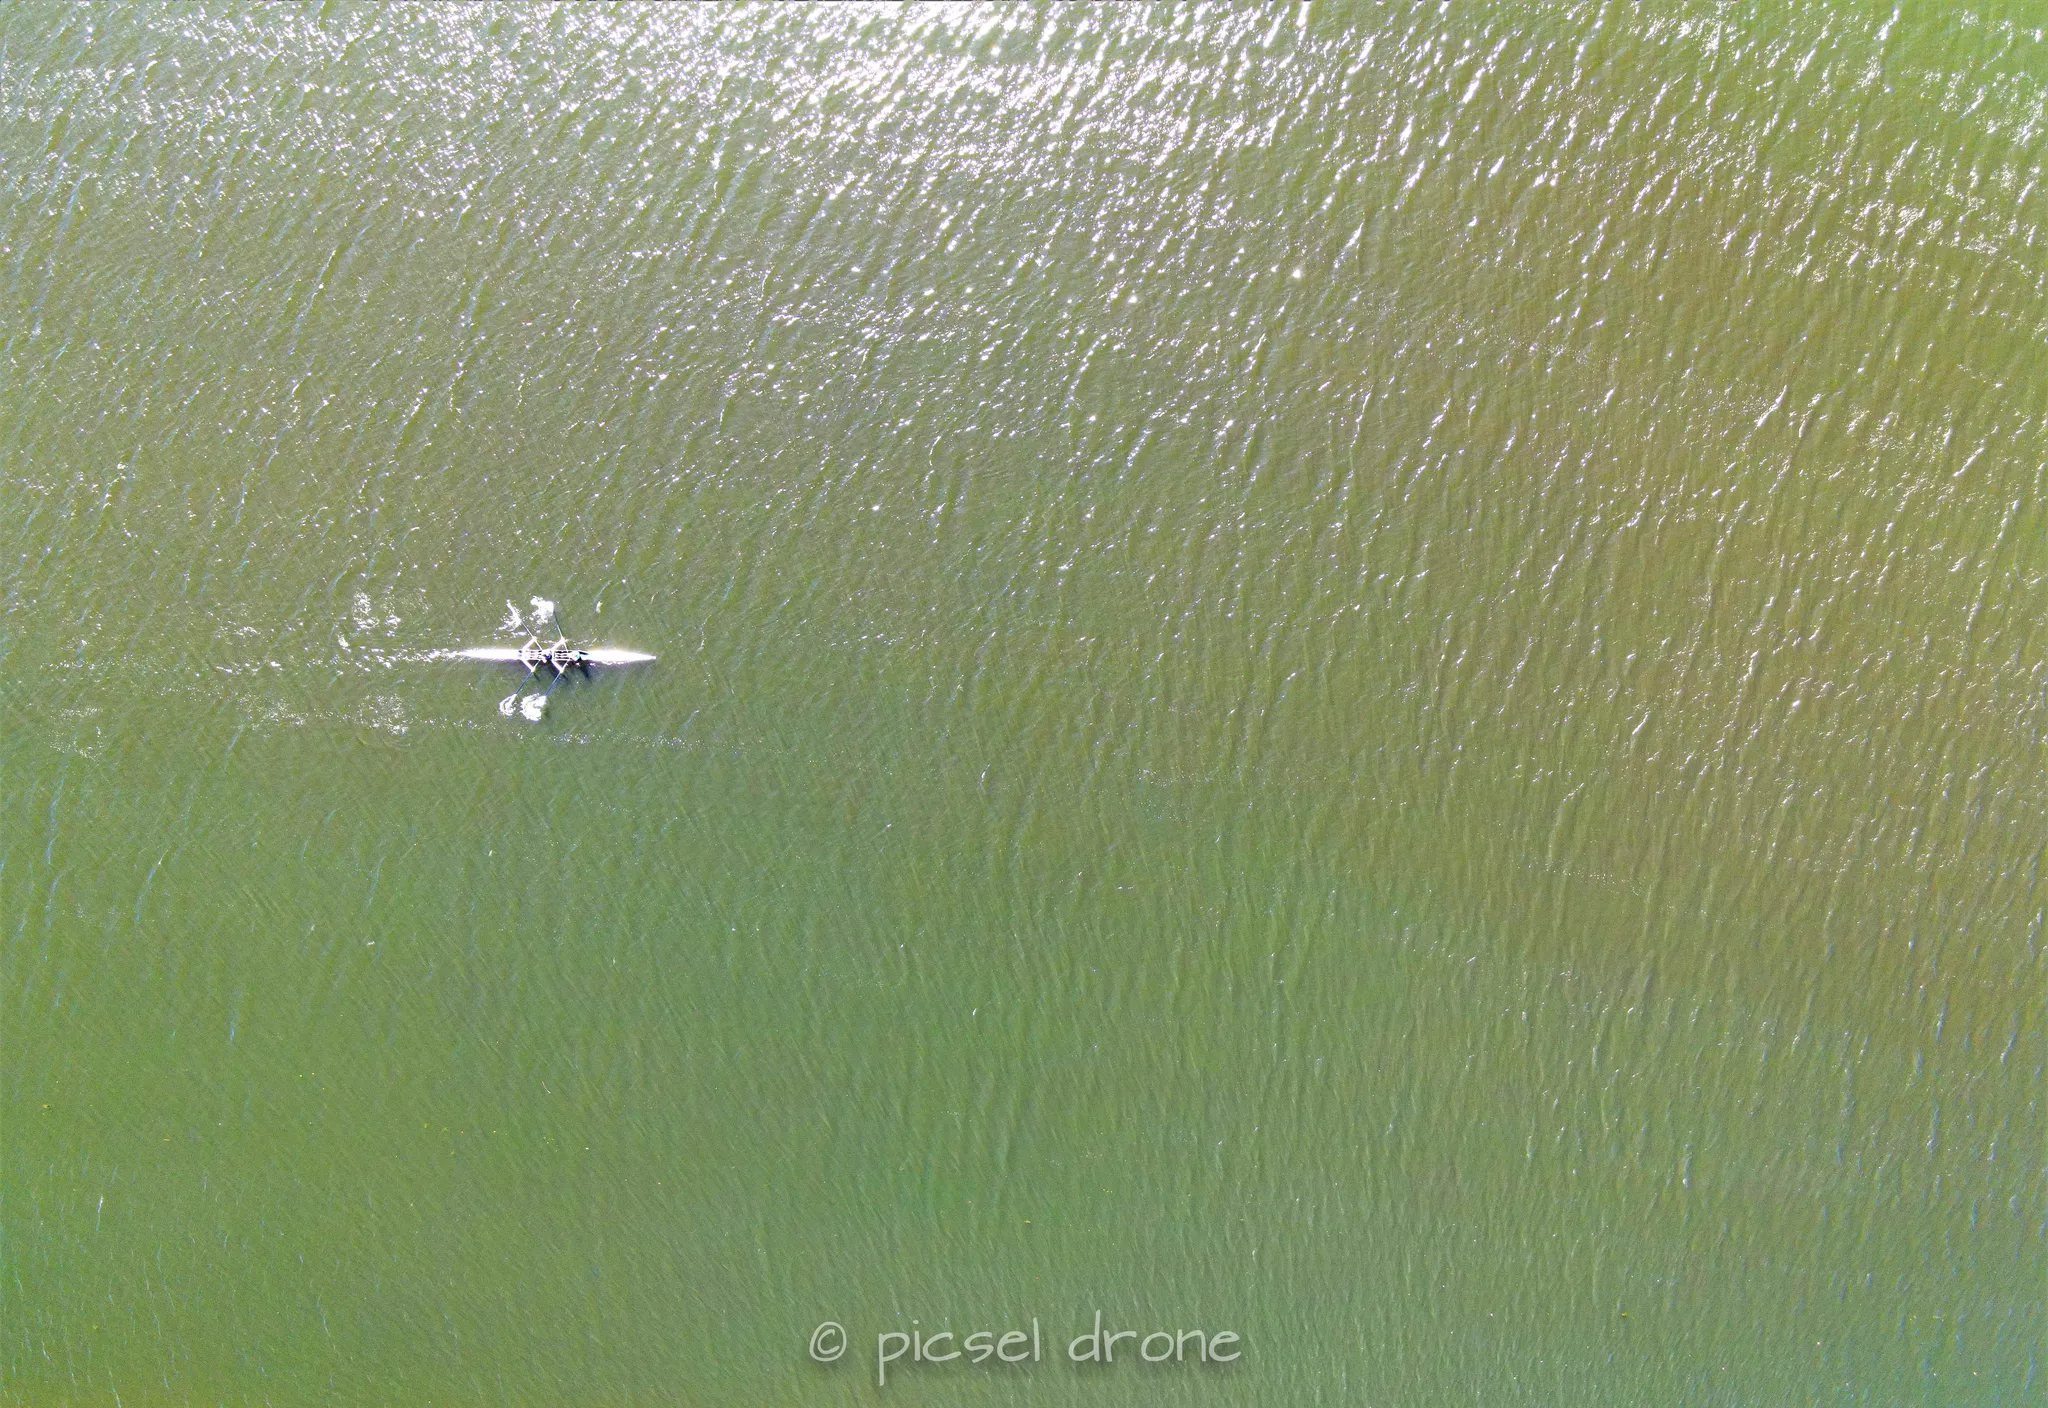 Prise de vue aérienne, photo aérienne d'un aviron sur le canal de Caen à Ouistreham, télépilote drone, pilote drone, PICSEL DRONE, CAEN